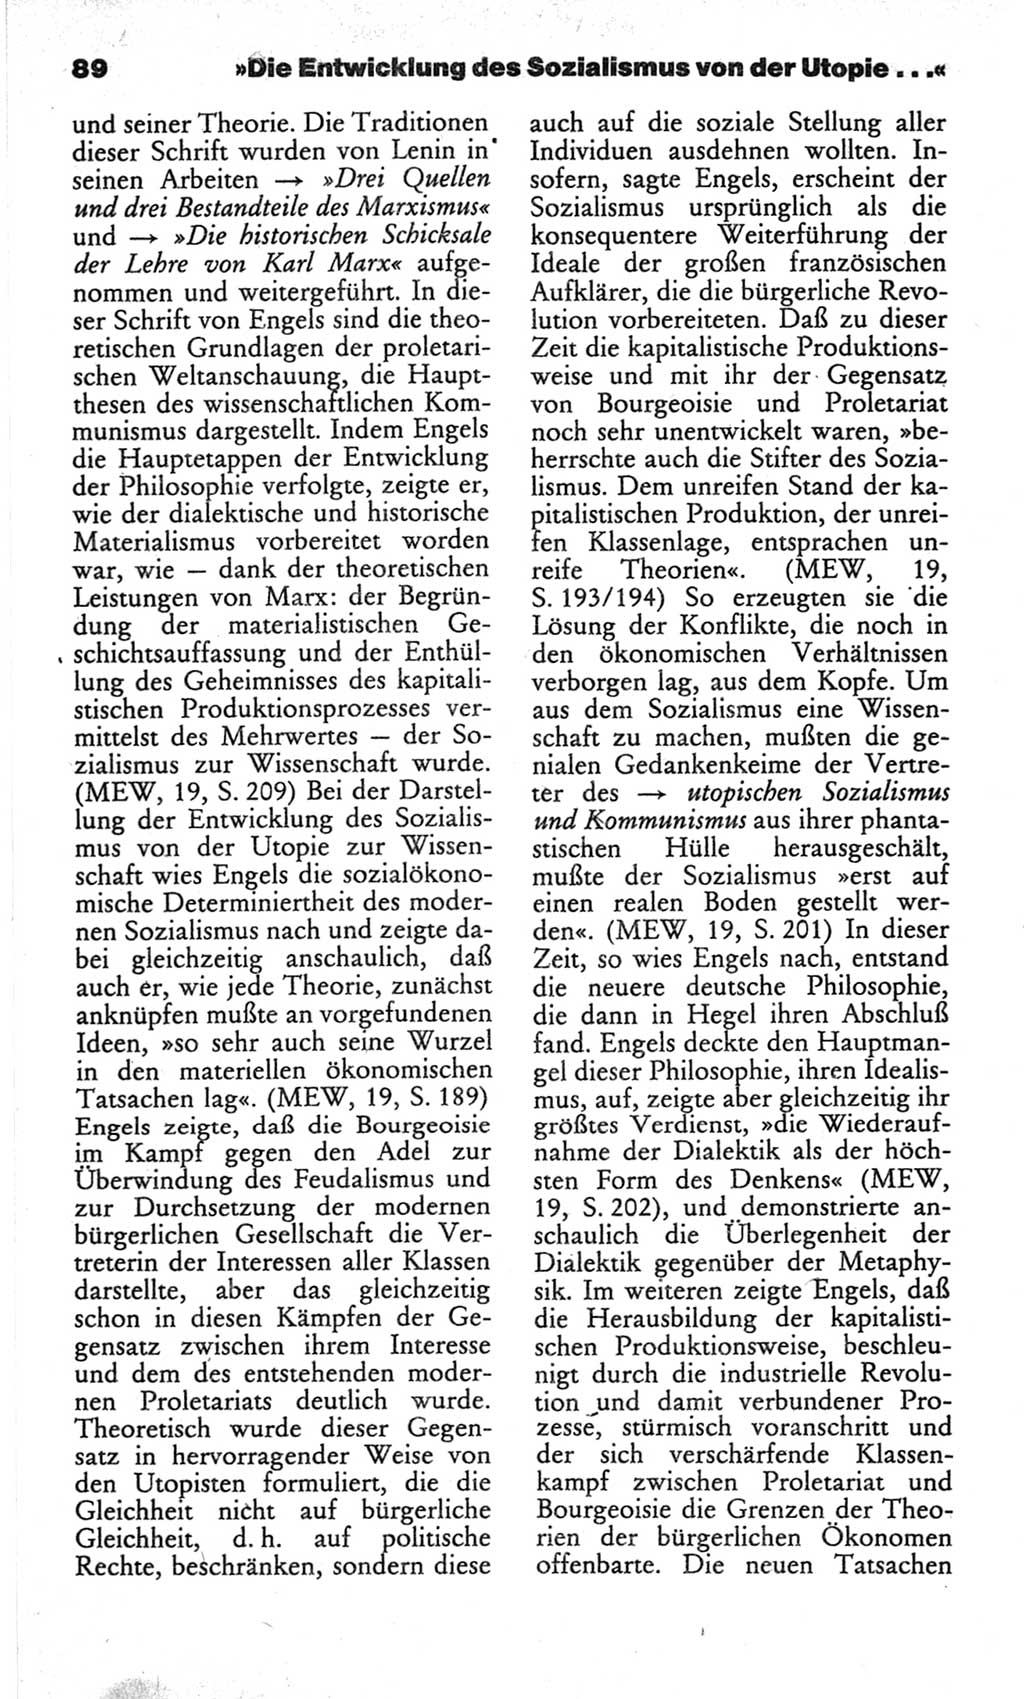 Wörterbuch des wissenschaftlichen Kommunismus [Deutsche Demokratische Republik (DDR)] 1982, Seite 89 (Wb. wiss. Komm. DDR 1982, S. 89)